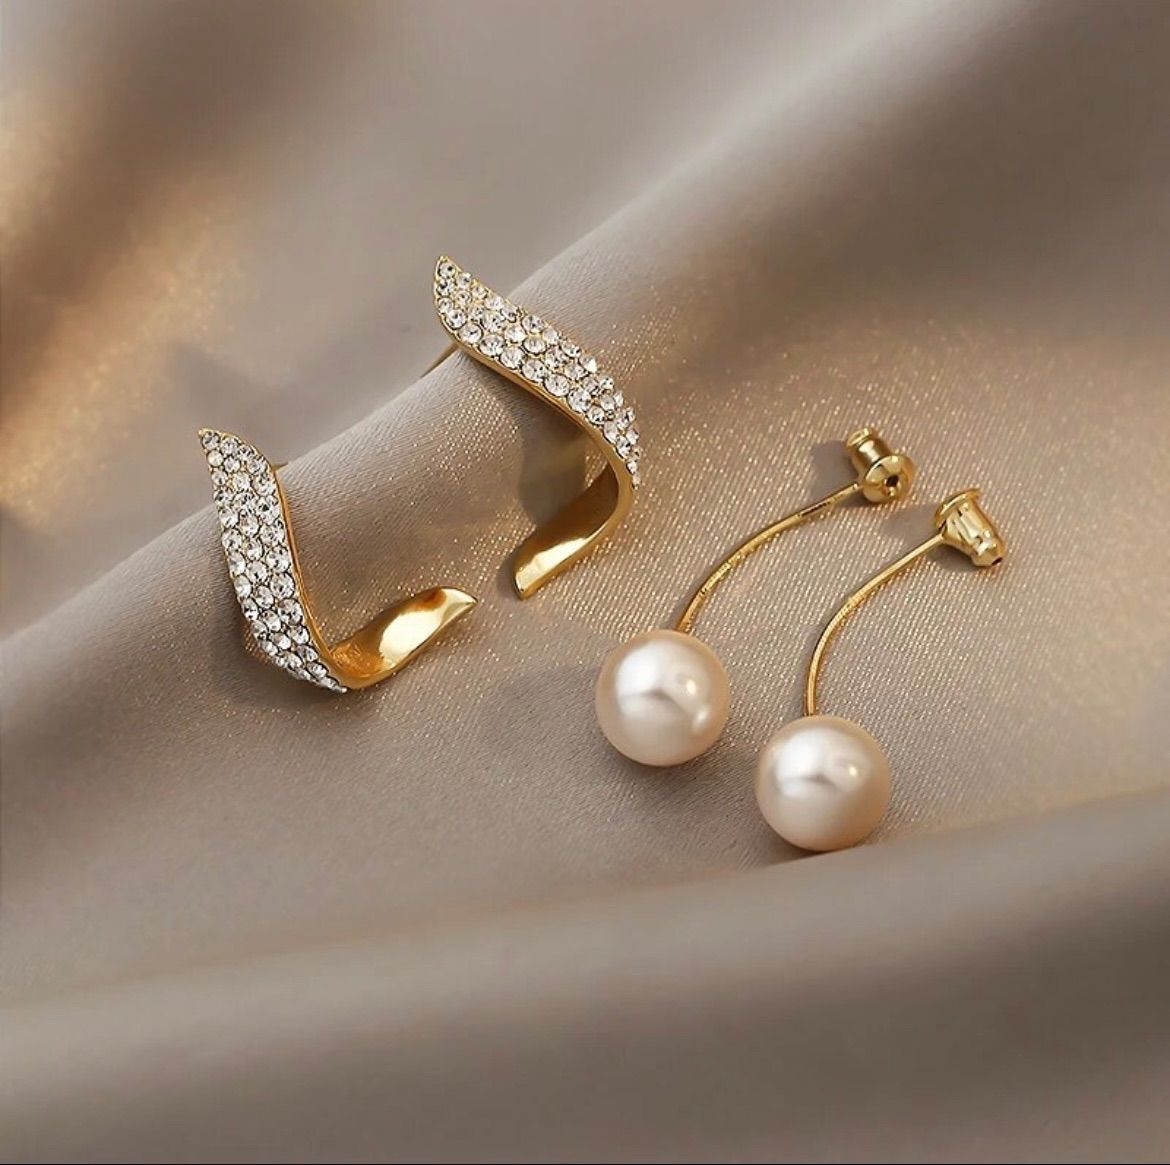 ピアス 最高級 S925 ラインストーン ゴールド 韓国 結婚式 ダイヤ 真珠